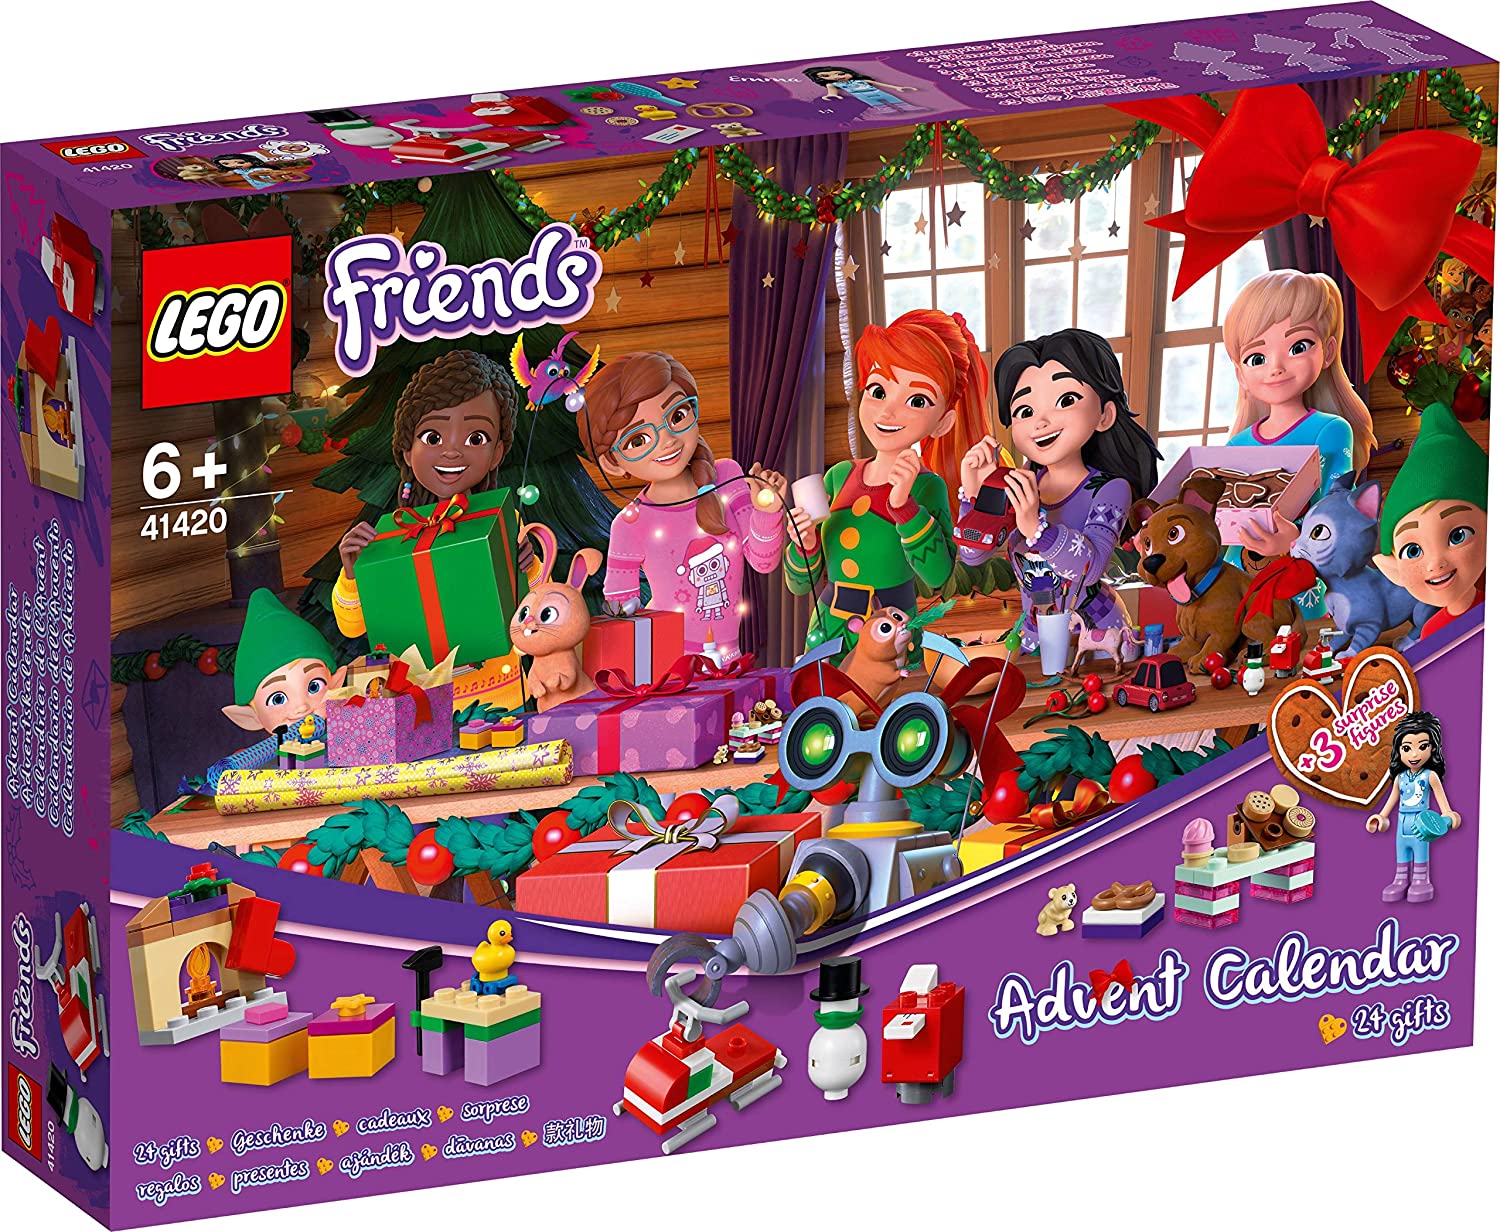 Lego Friends calendario dell'avvento 2020